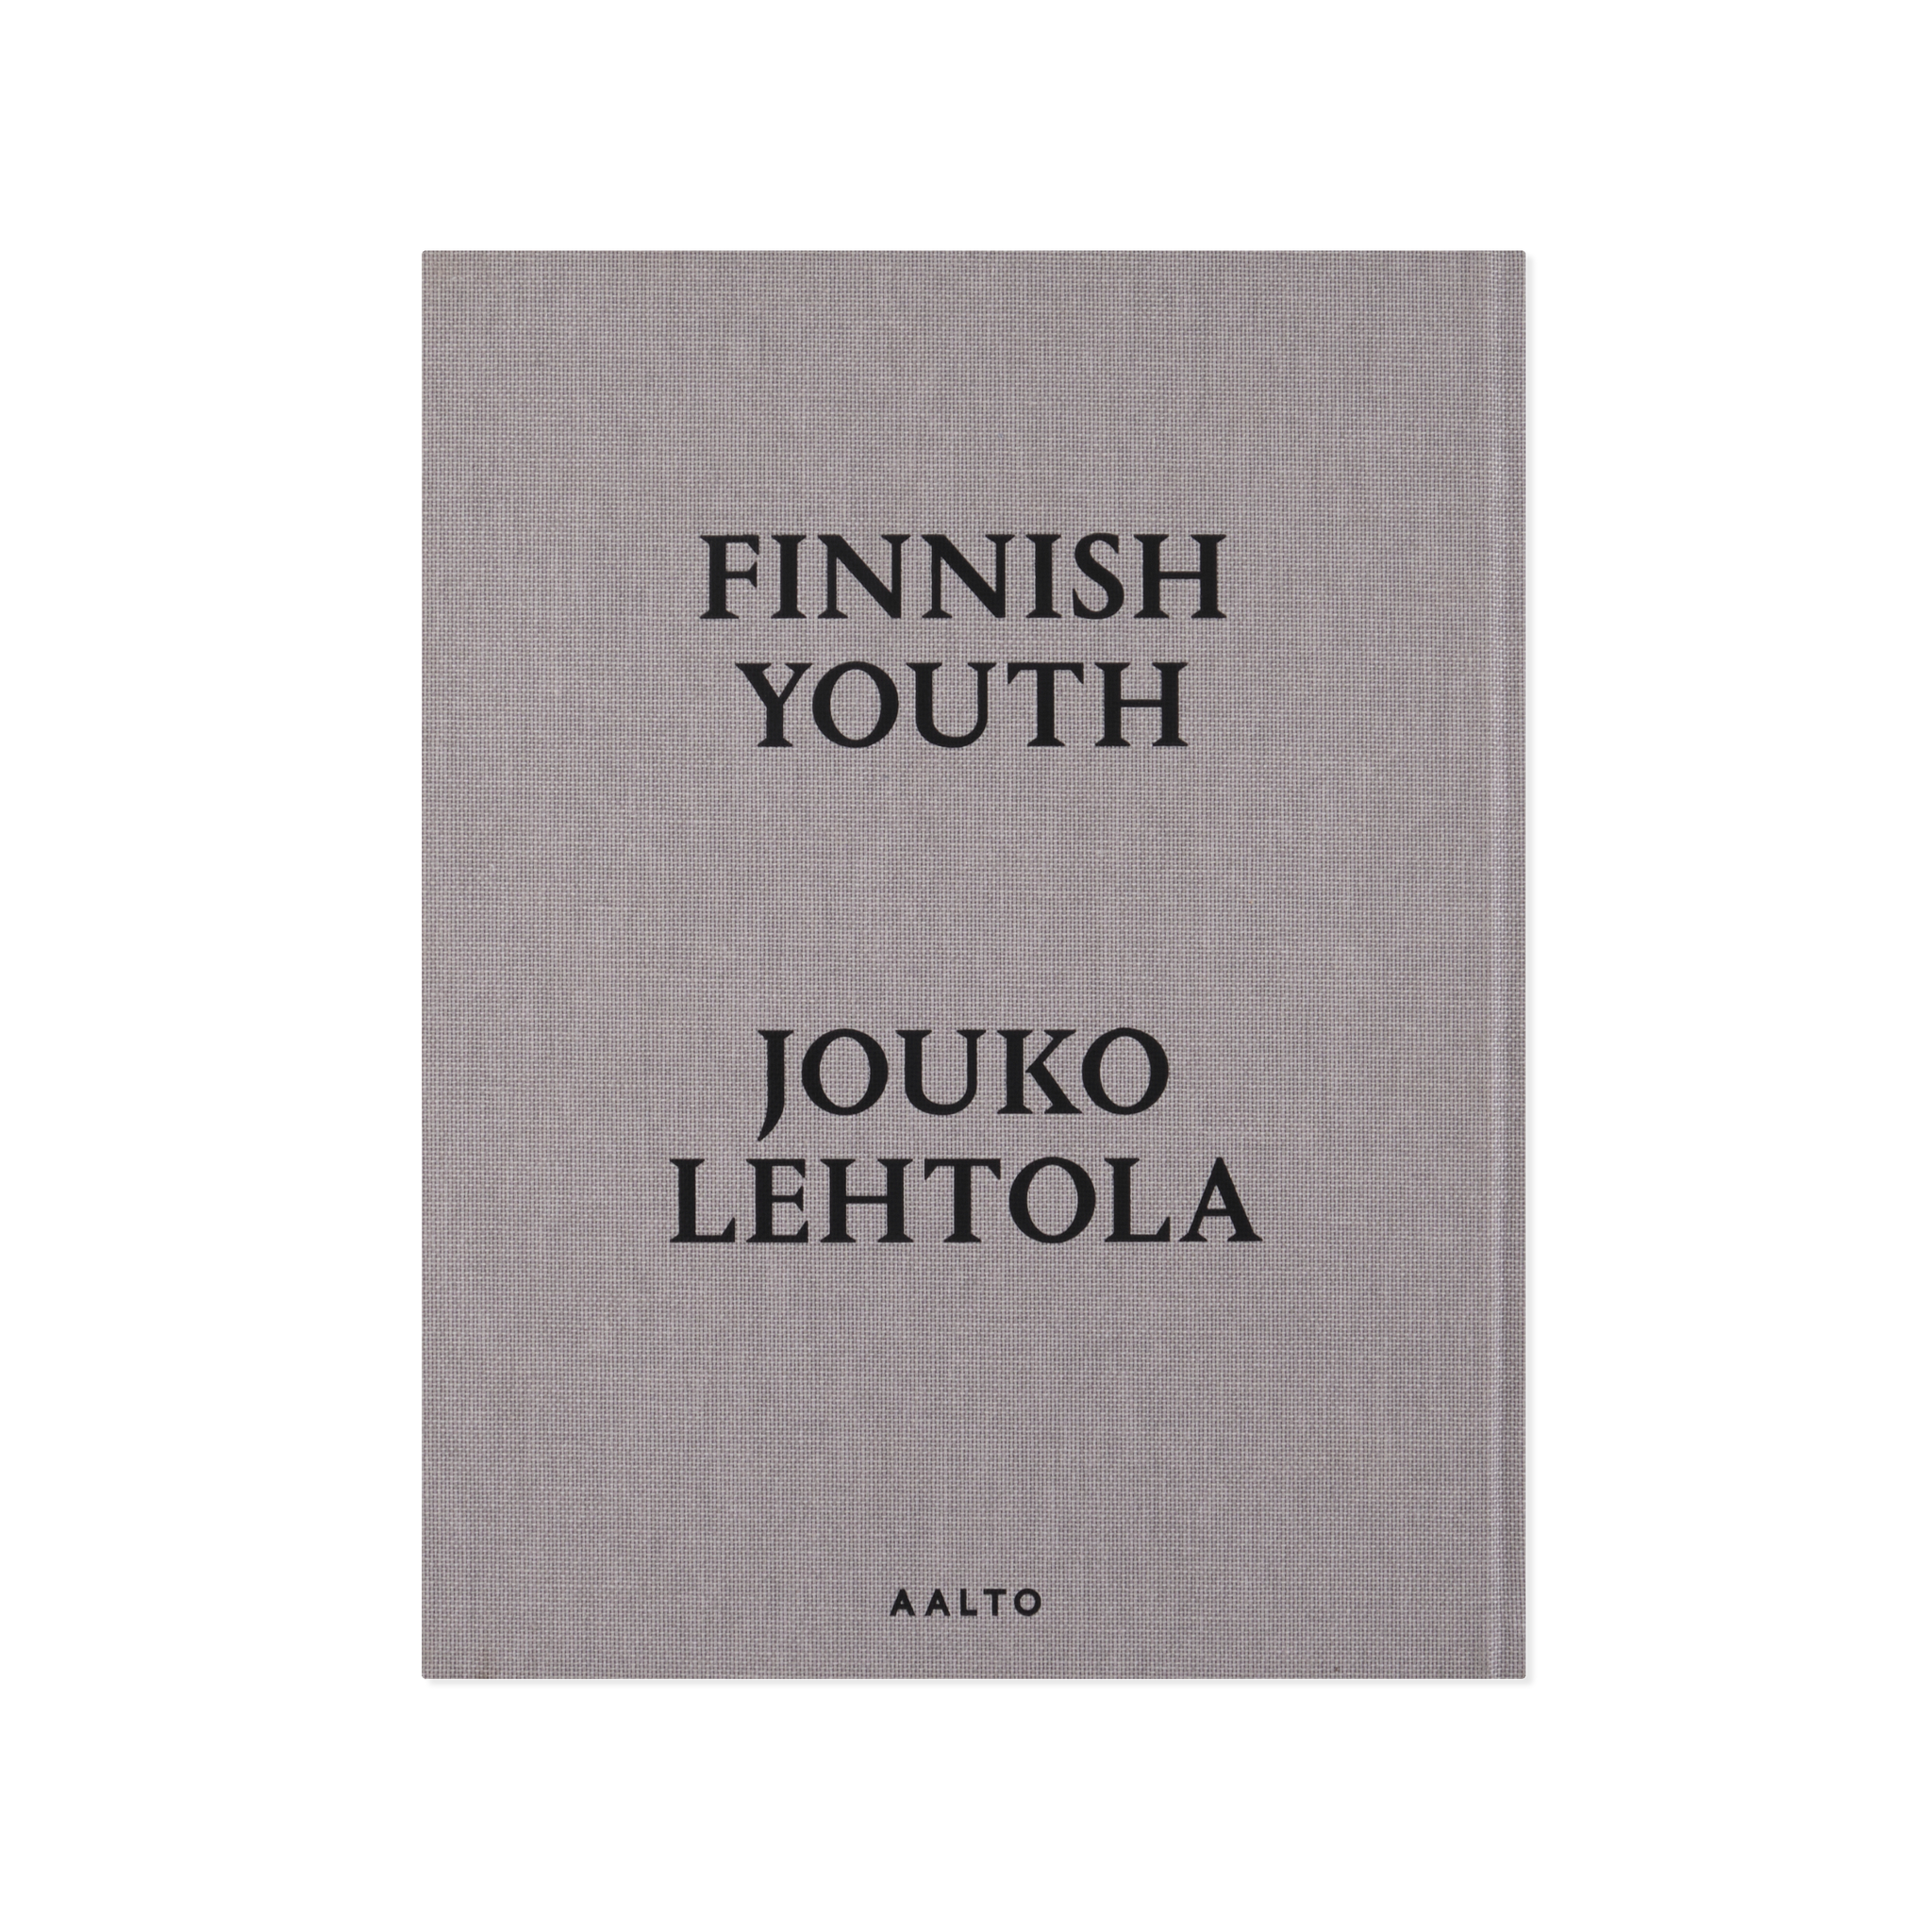 Jouko Lehtola — Finnish Youth